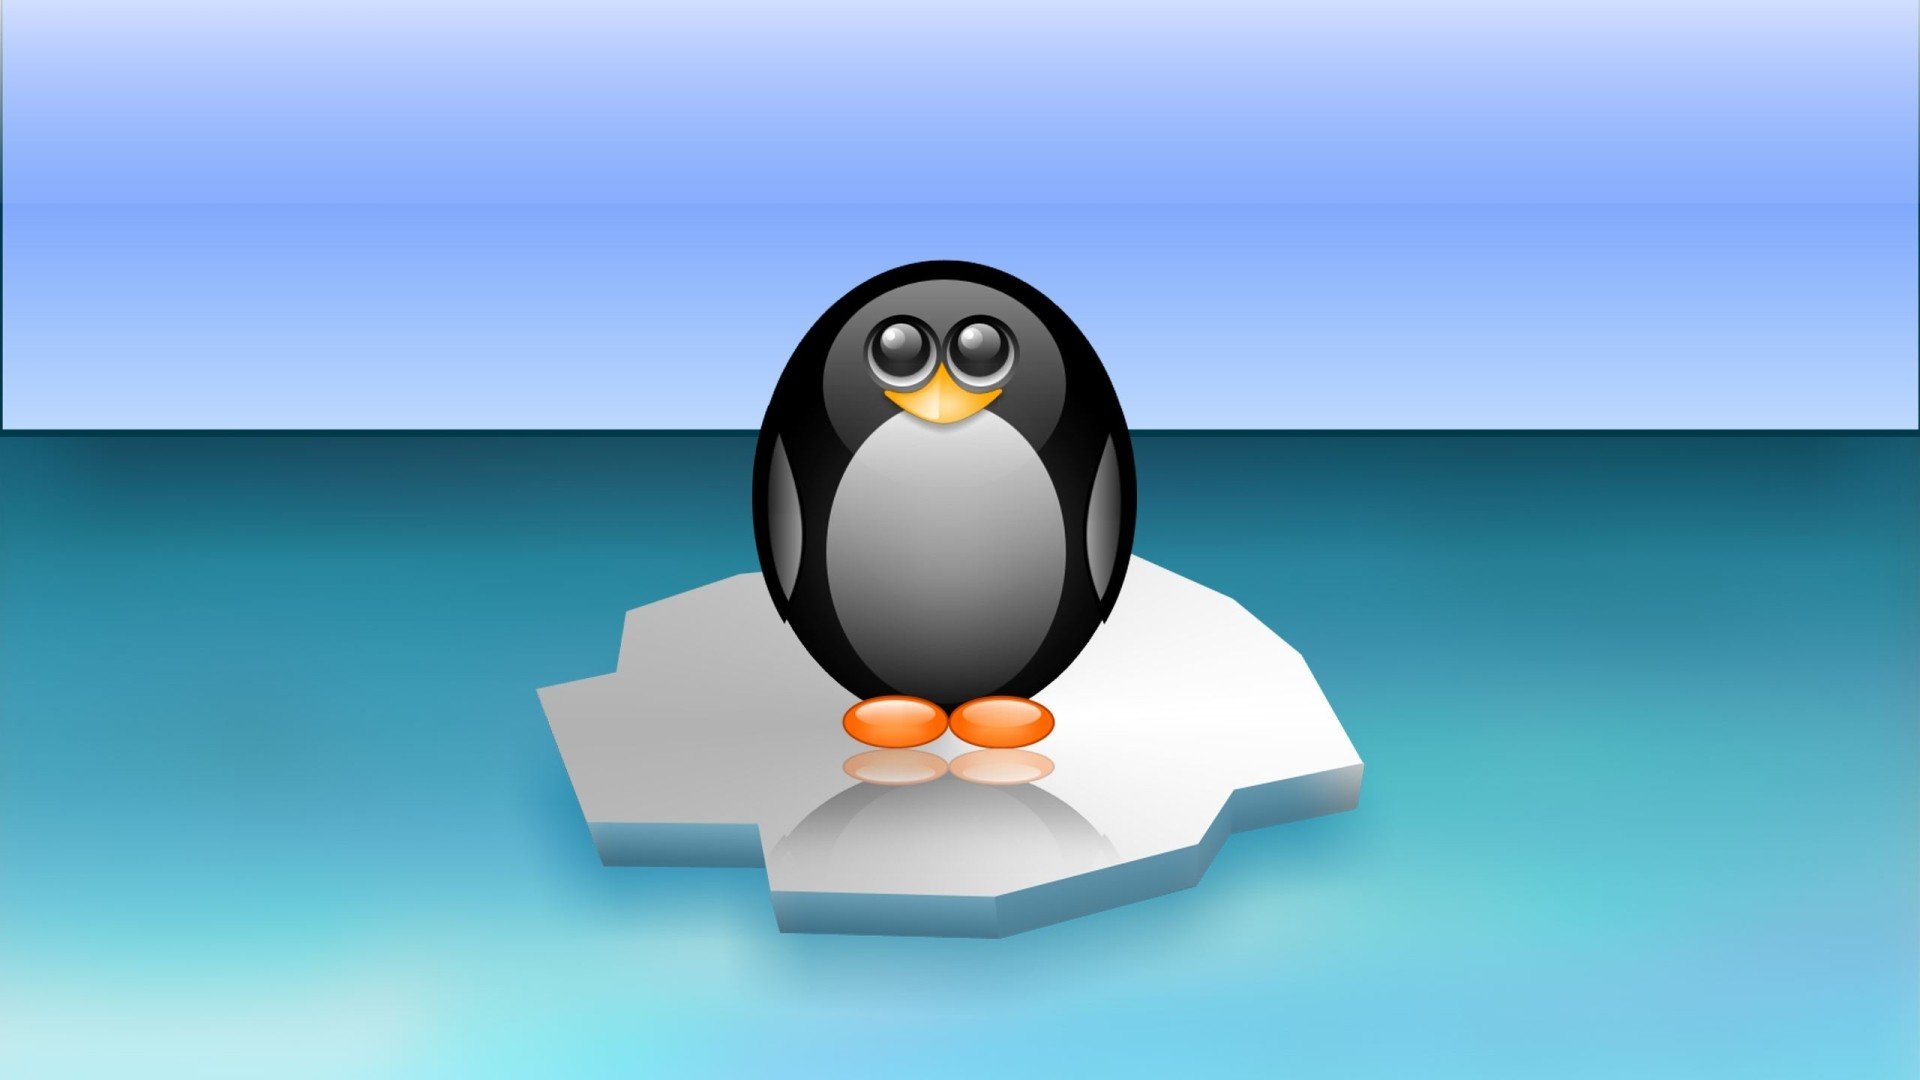 Linux tux penguins wallpaper | 1920x1080 | 323701 | WallpaperUP